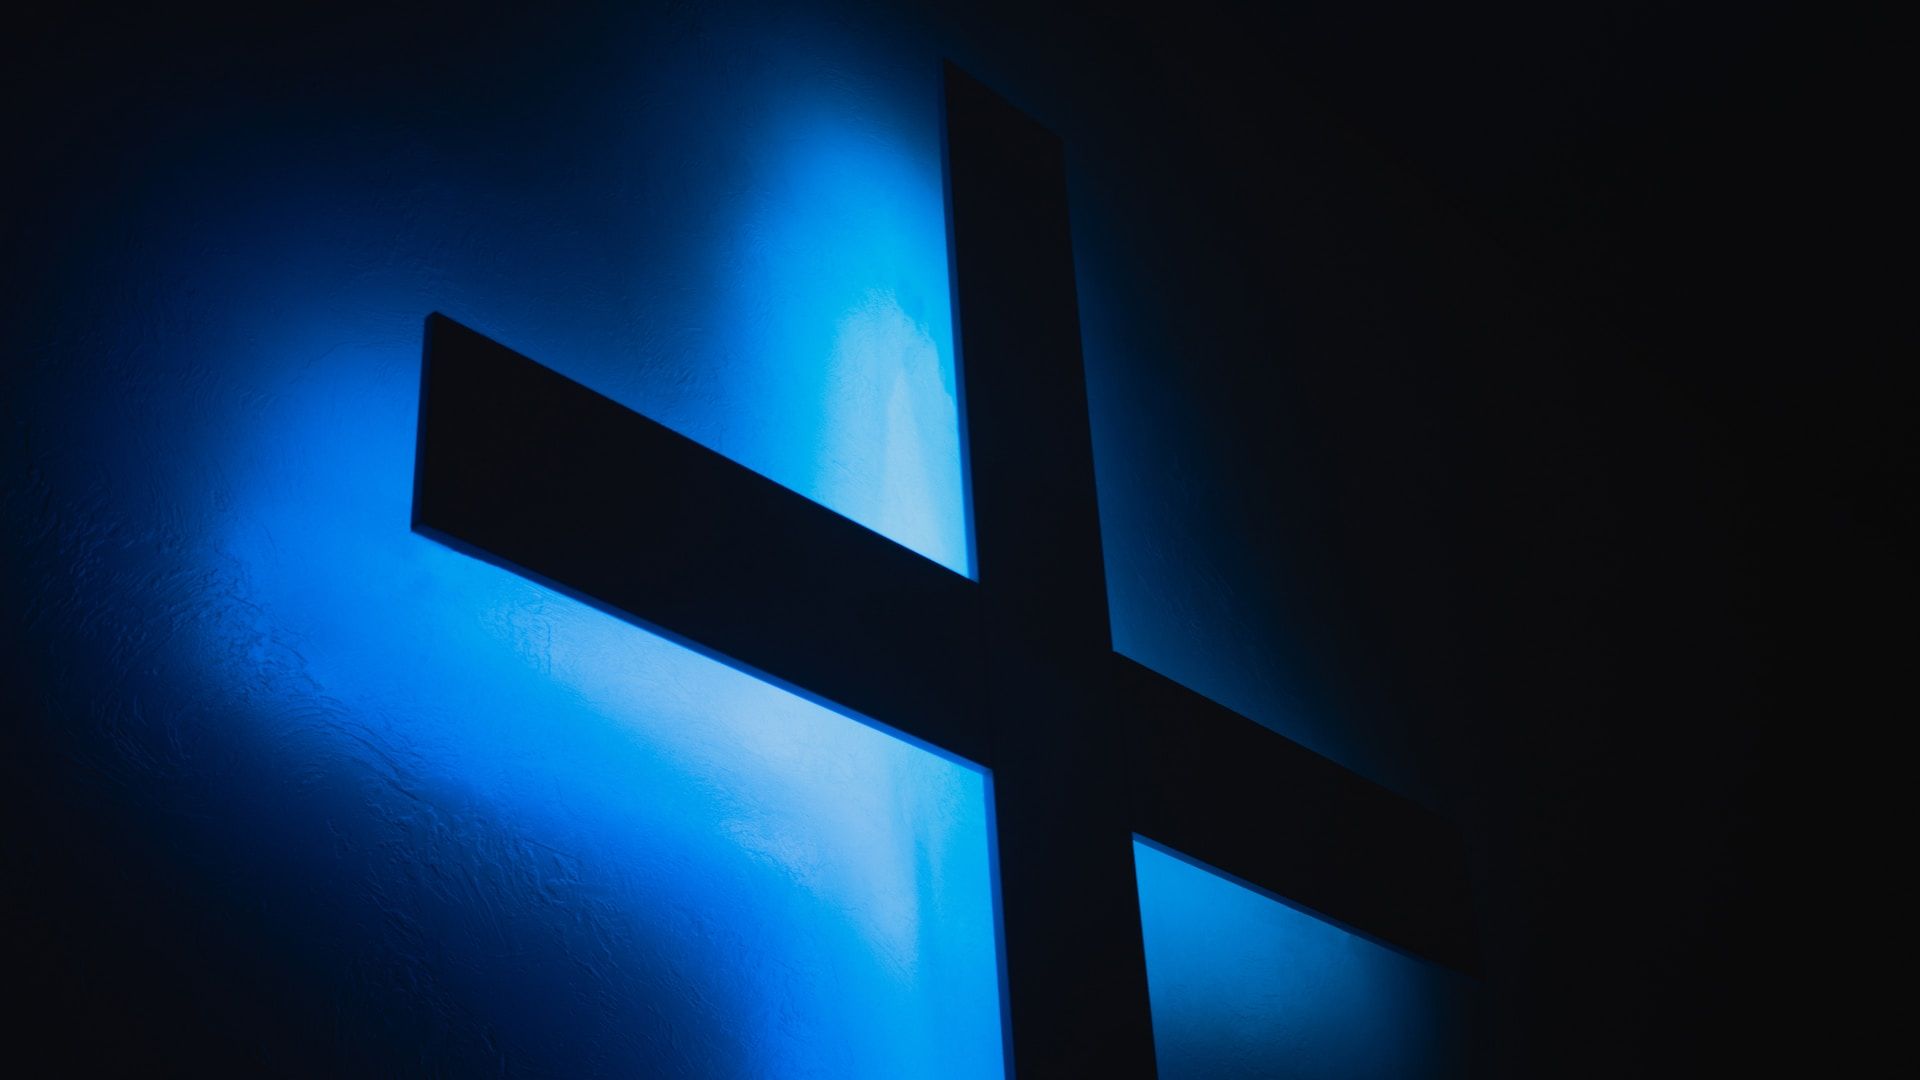 croix en contre jour dans la nuit, avec halo bleu - Photo by James Kovin on https://unsplash.com/fr/photos/fond-decran-numerique-bleu-et-blanc-WQjSCX8utYw